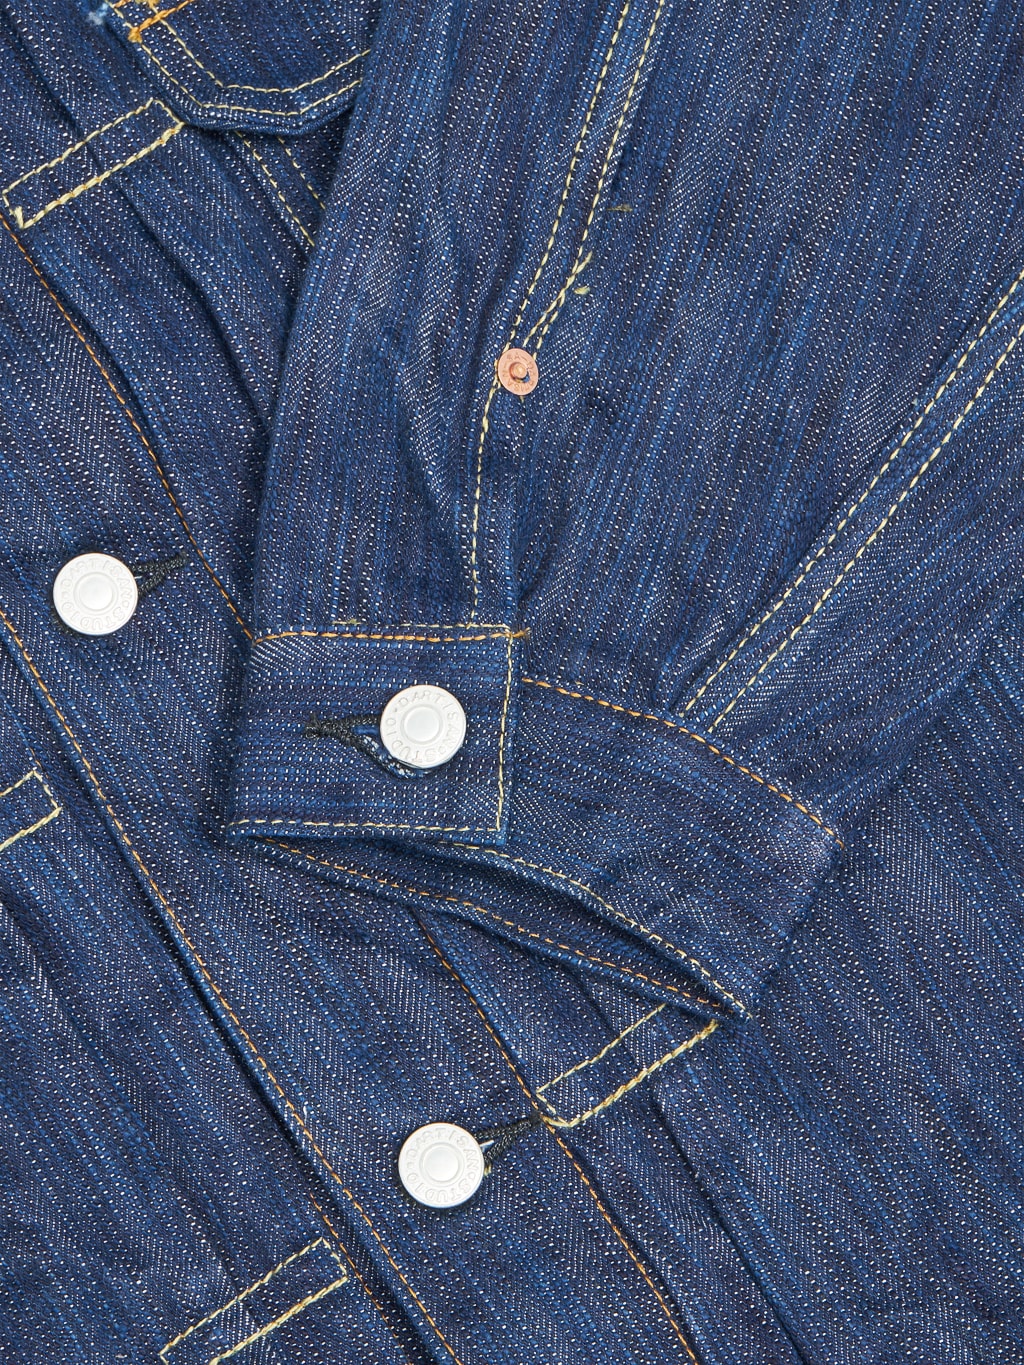 Studio Dartisan Tokushima Awa Shoai Type II indigo jacket cuff texture